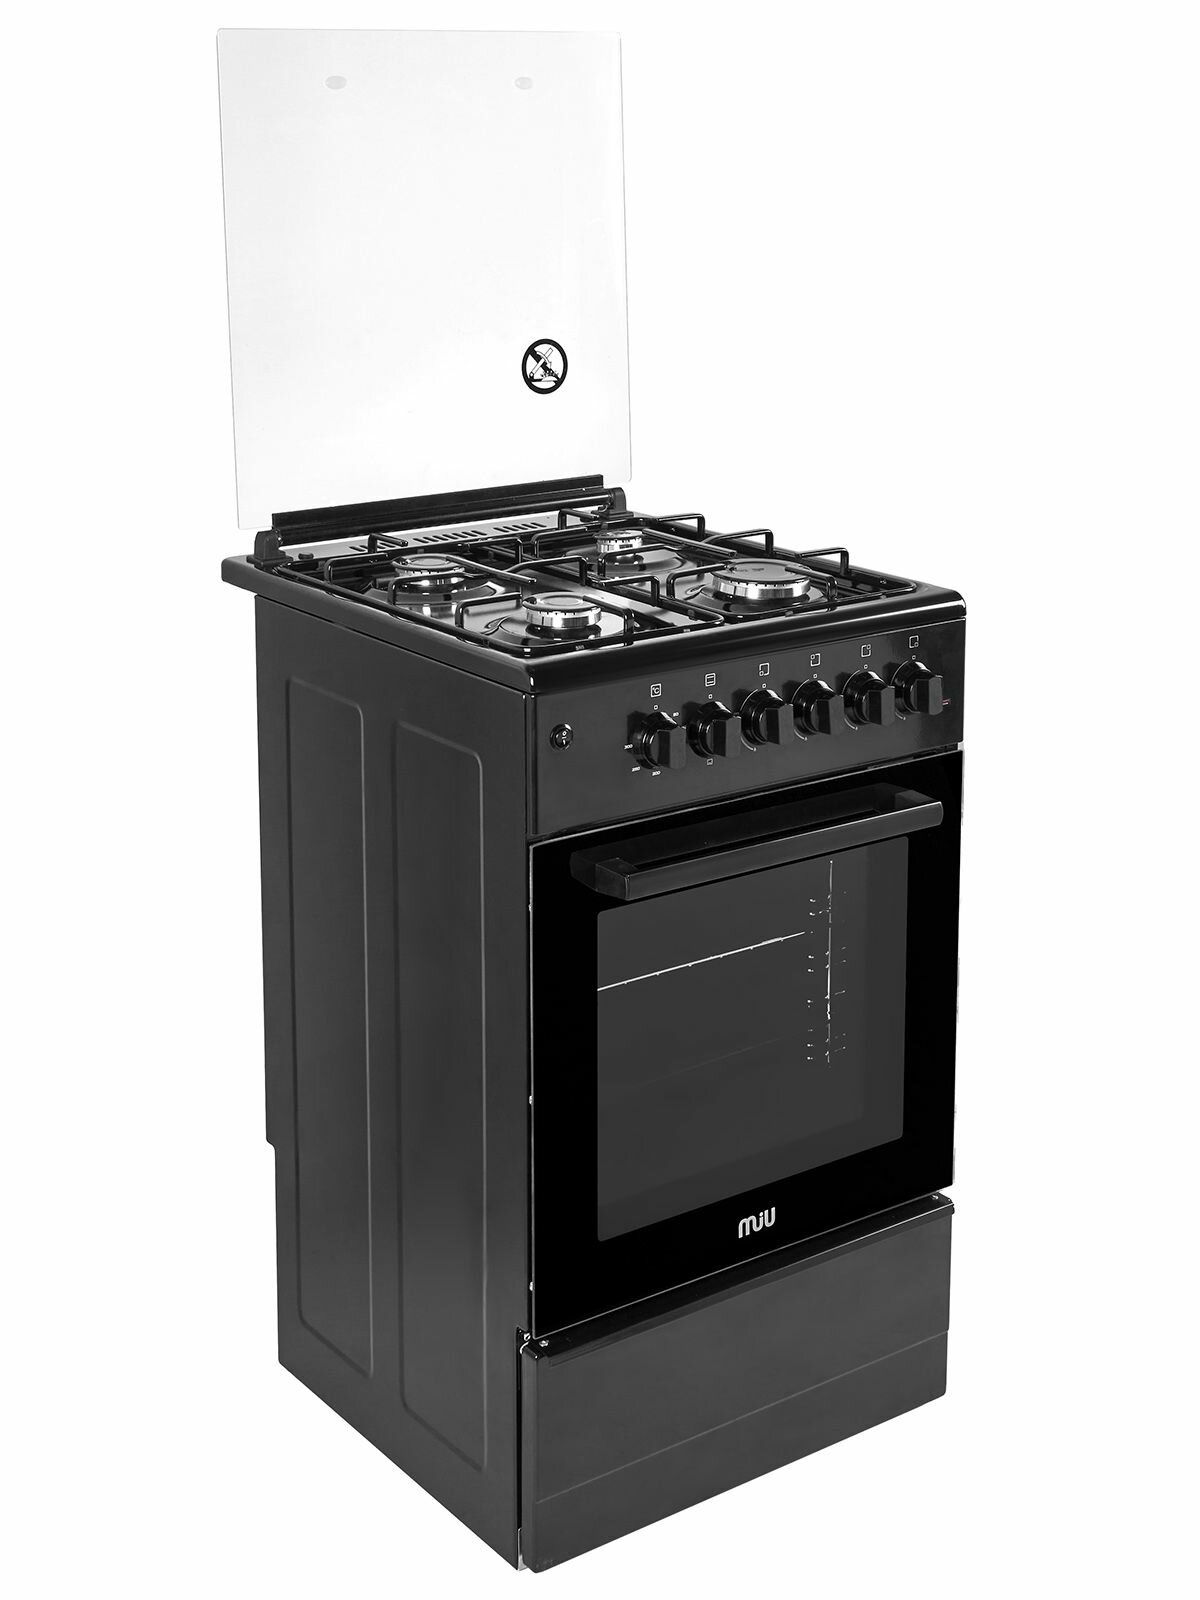 Кухонная плита MIU 5016 ERP ГК LUX черная 50 см, газовая с электрической духовкой, газ-контроль, электроподжиг, 3 режима духовки